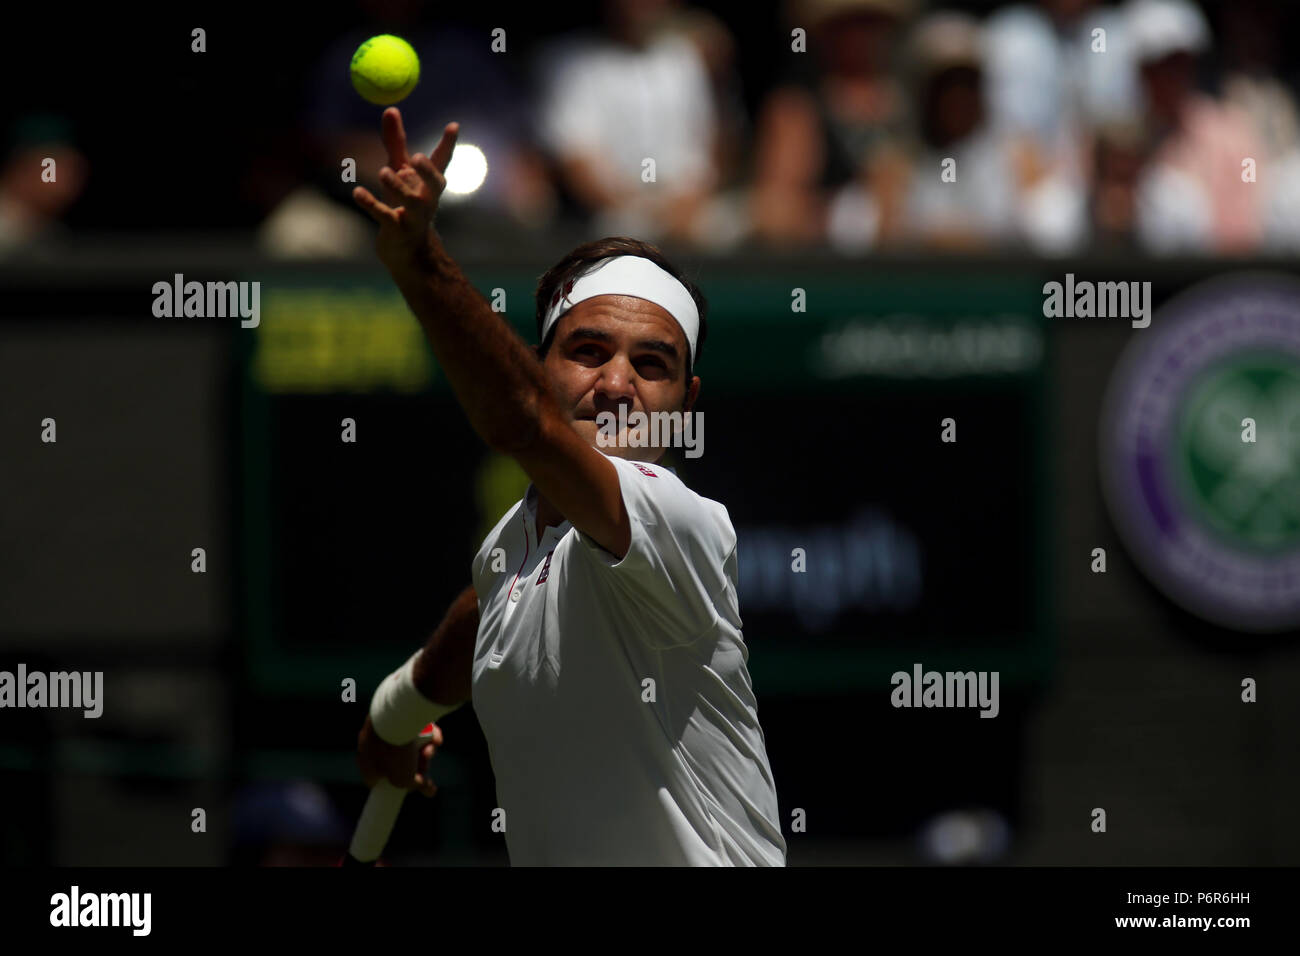 Londres, Angleterre, Juillet 2nd, 2018 : Wimbledon Tennis : Roger Federer Numéro 1 en poste au cours de son premier match contre Dusan Lajovic de Serbie à Wimbledon aujourd'hui. Crédit : Adam Stoltman/Alamy Live News Banque D'Images